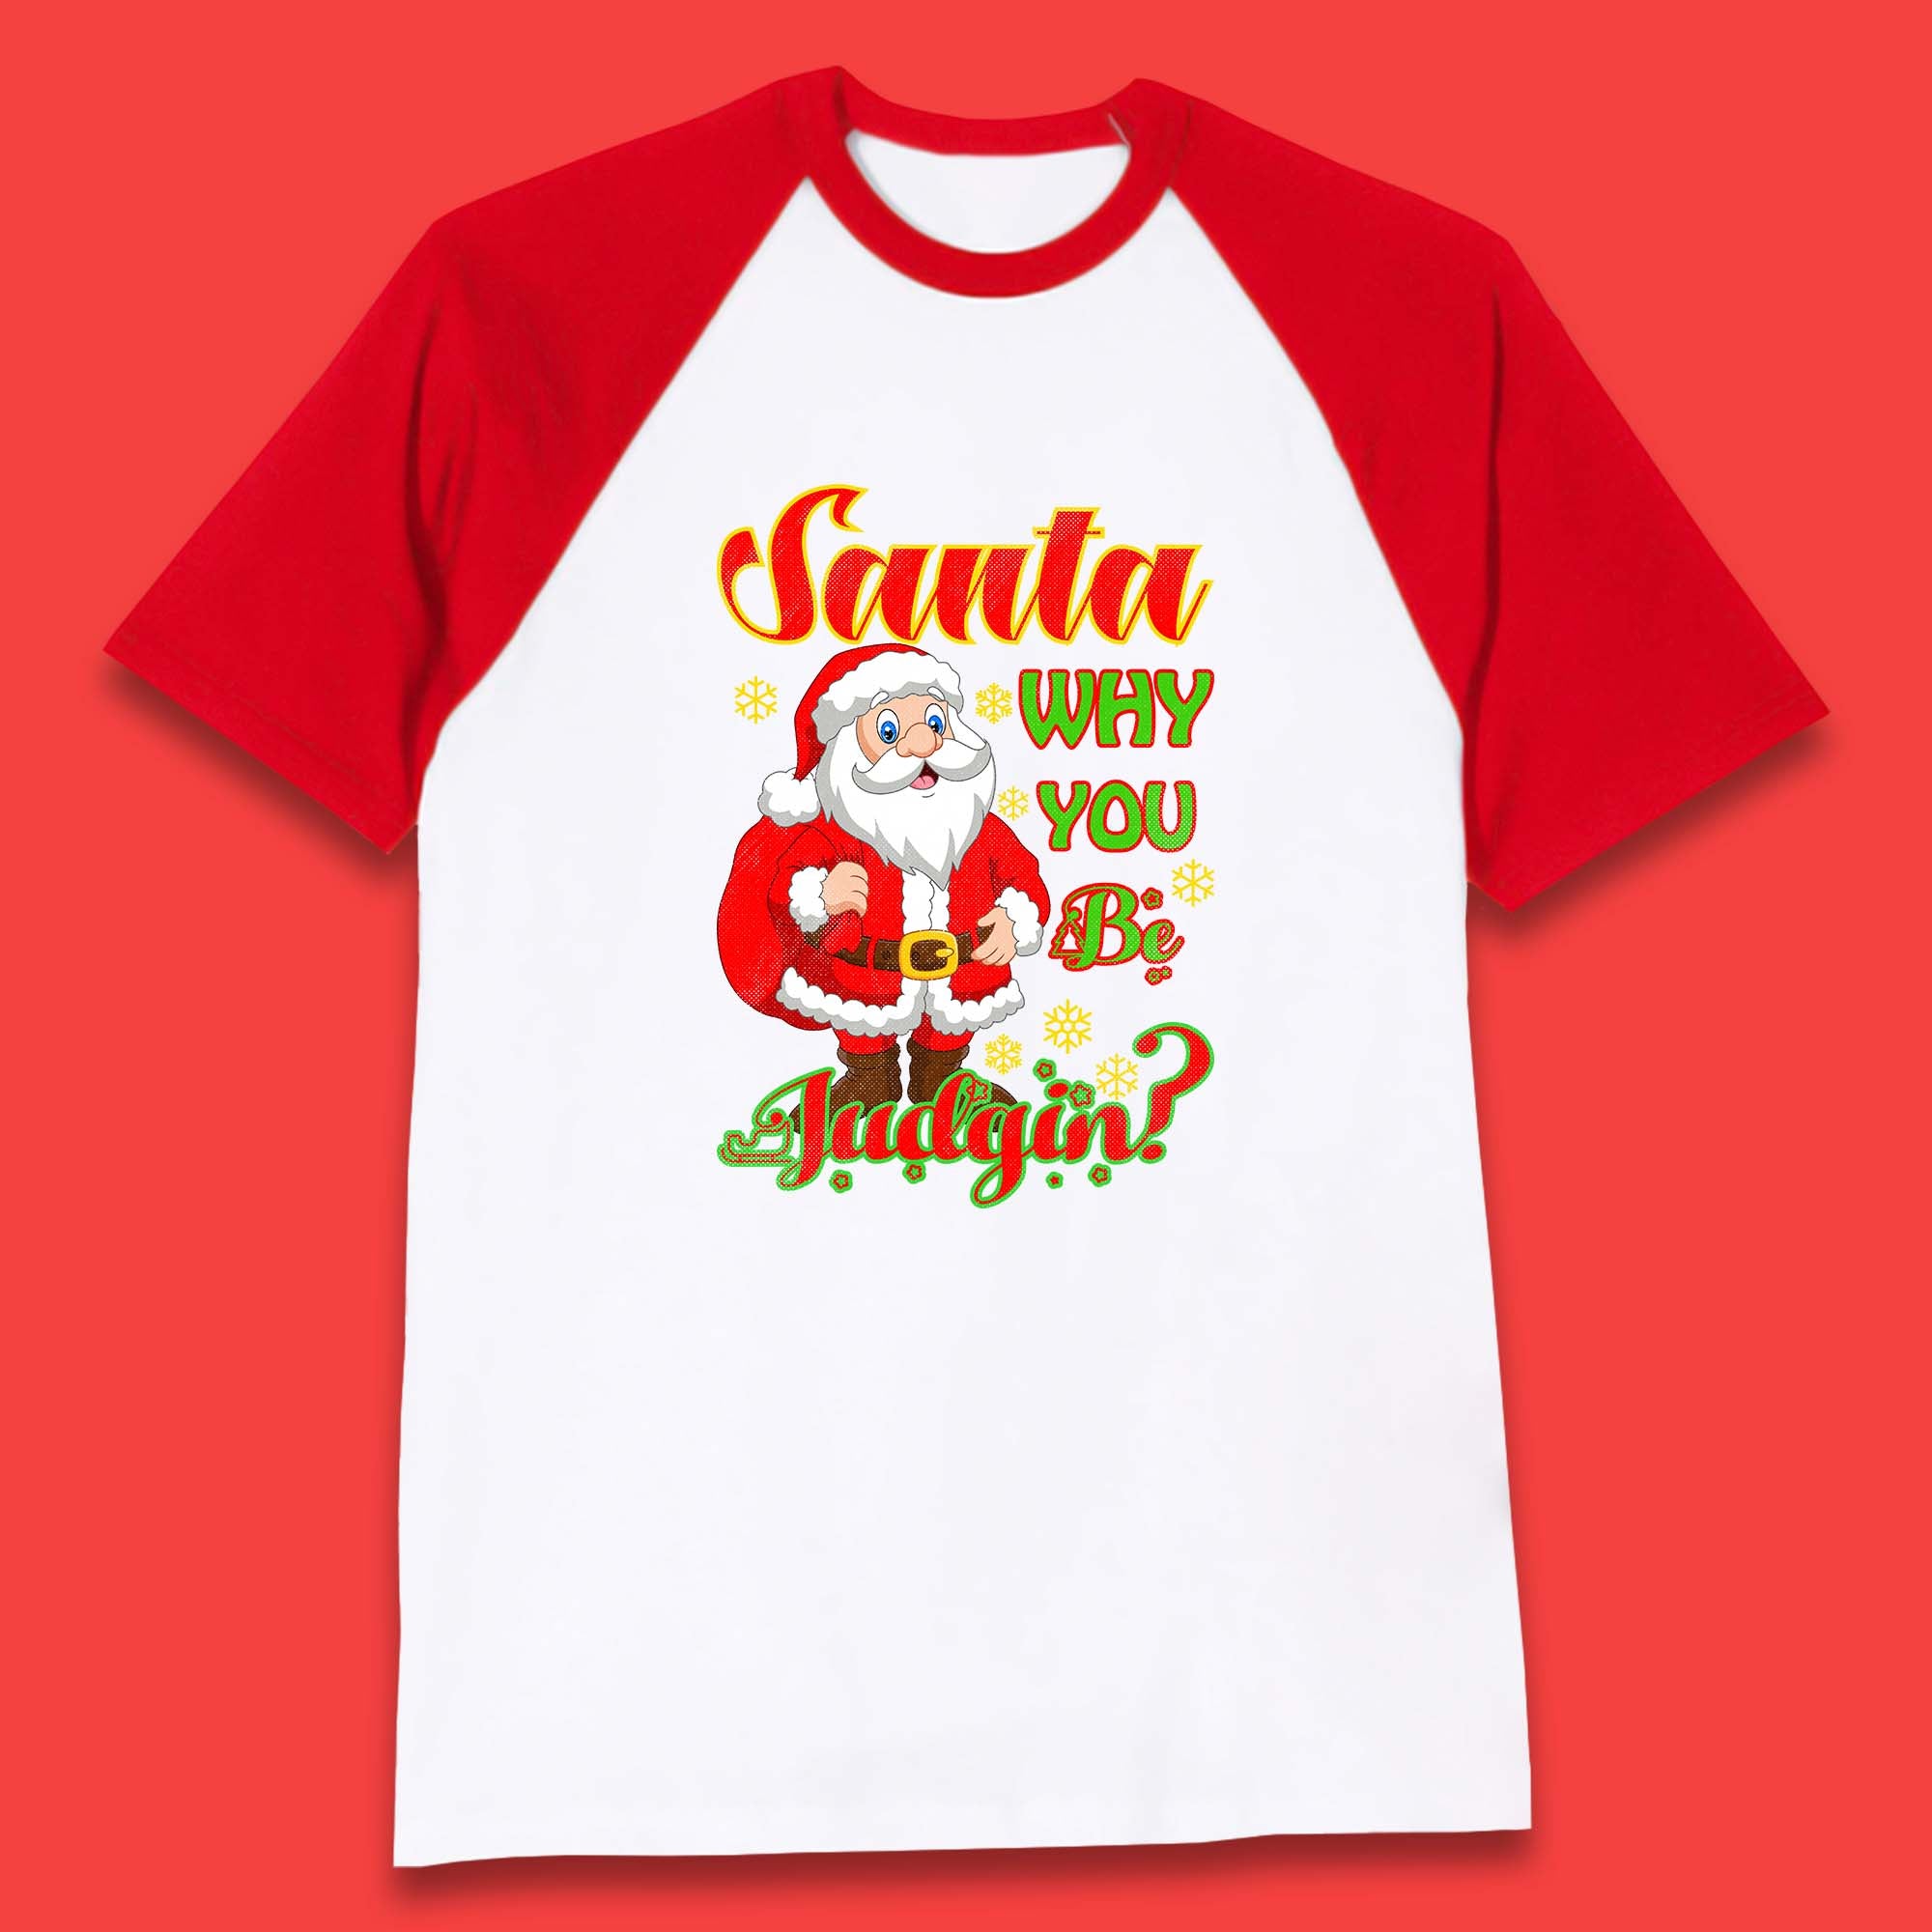 Santa Why You Be Judgin? Christmas Judging Funny Holiday Season Xmas Baseball T Shirt